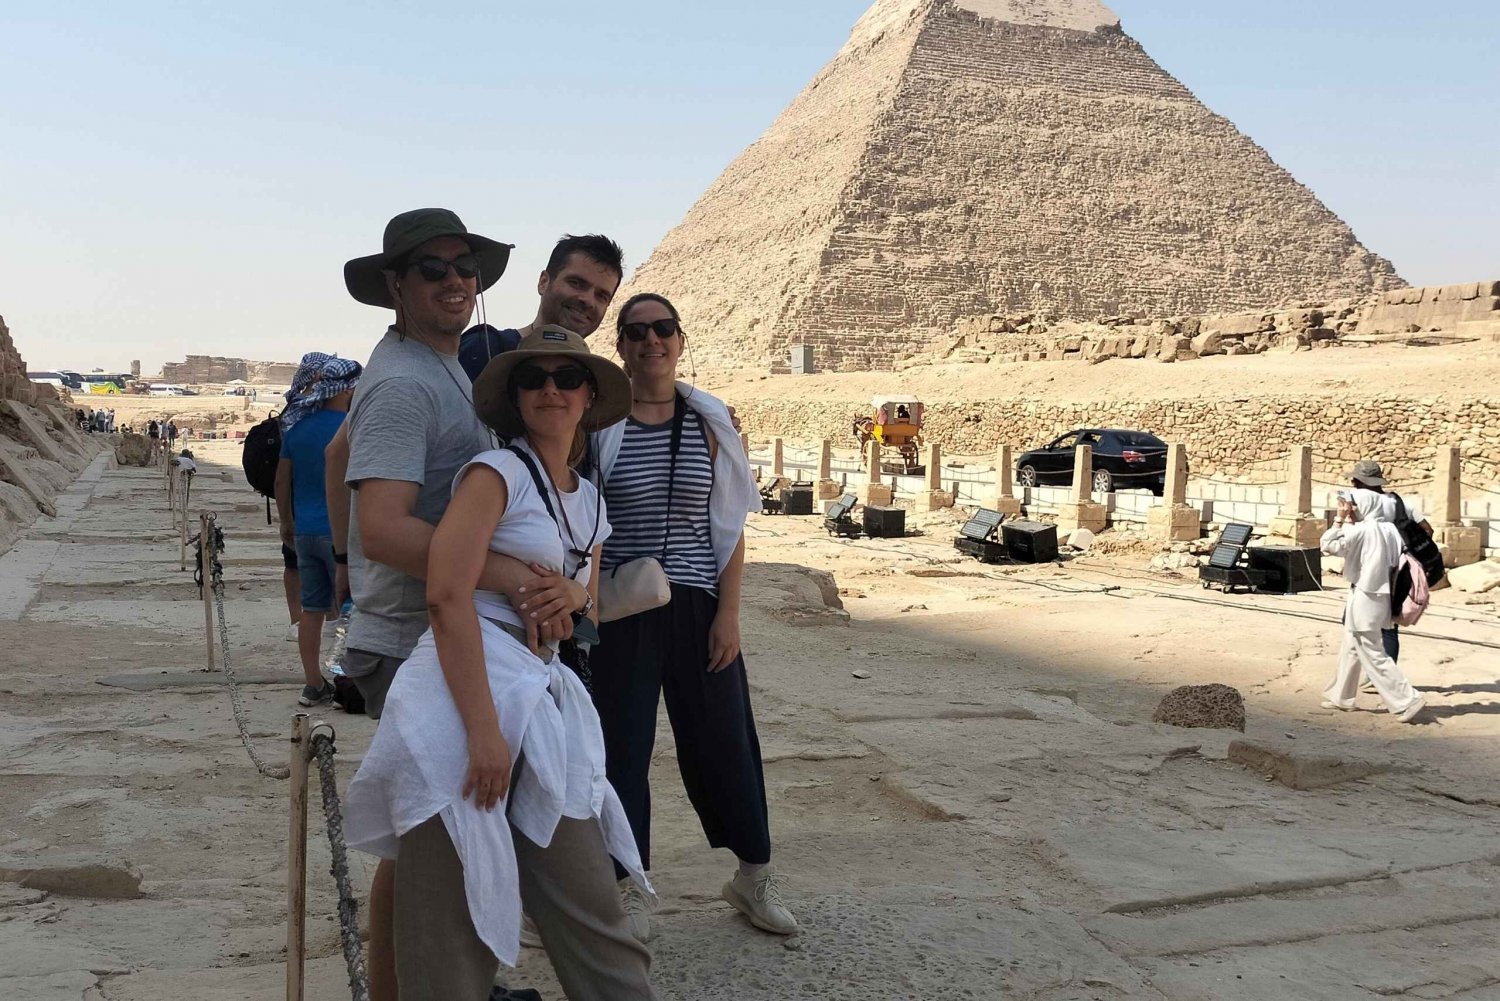 Pirâmides de Gizé, Museu da Múmia e Bazar Excursão privativa de um dia